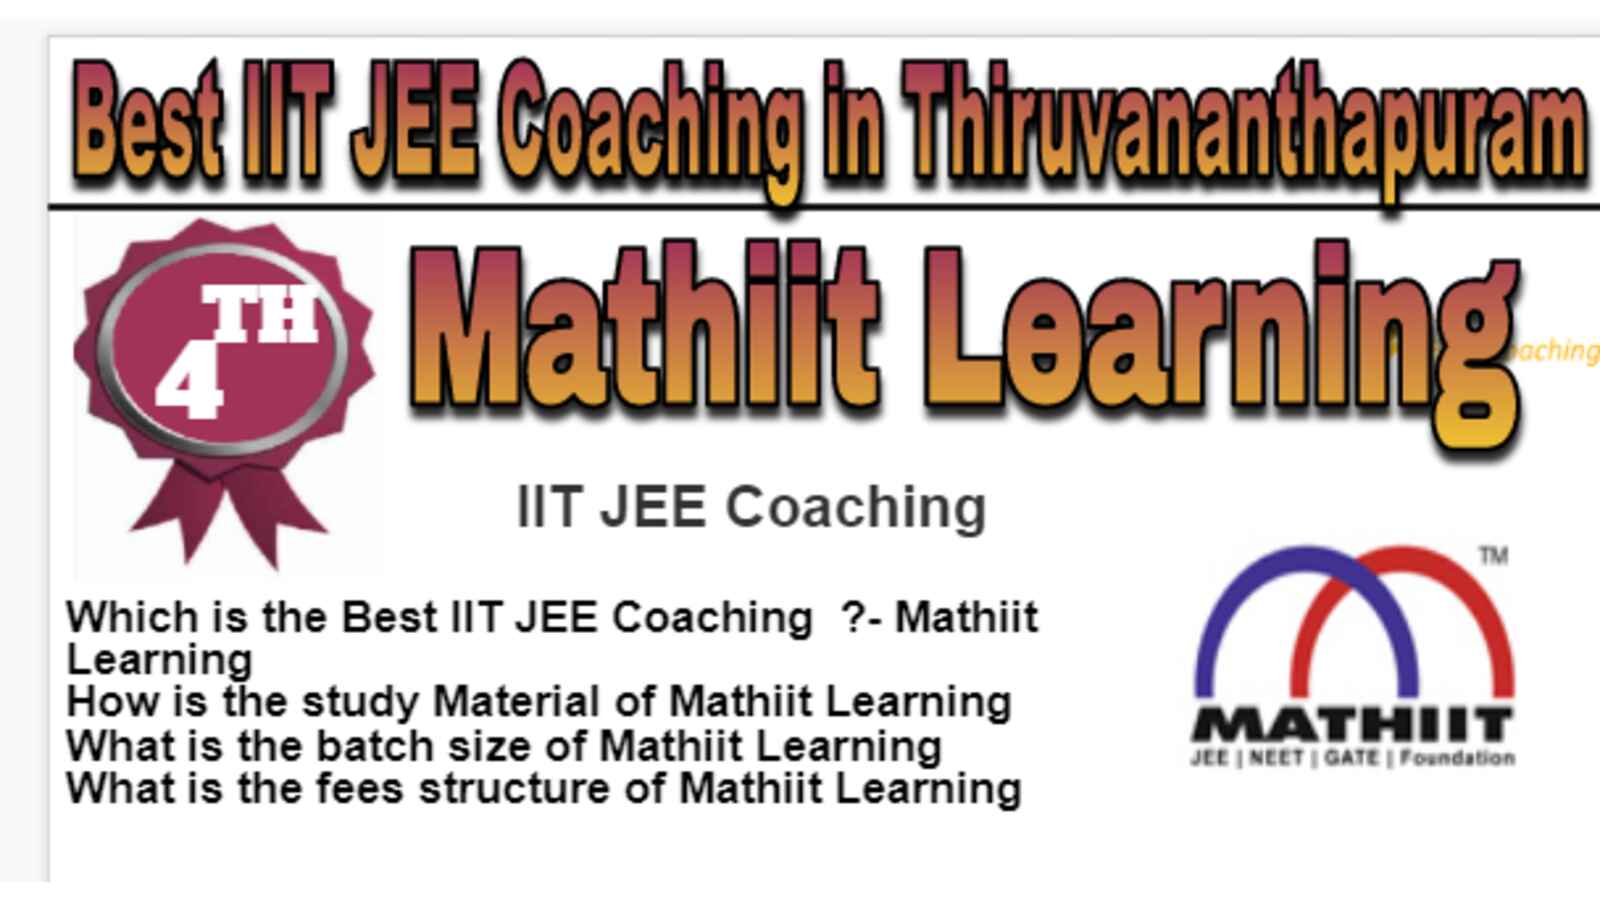 Rank 4 Best IIT JEE Coaching in Thiruvananthapuram